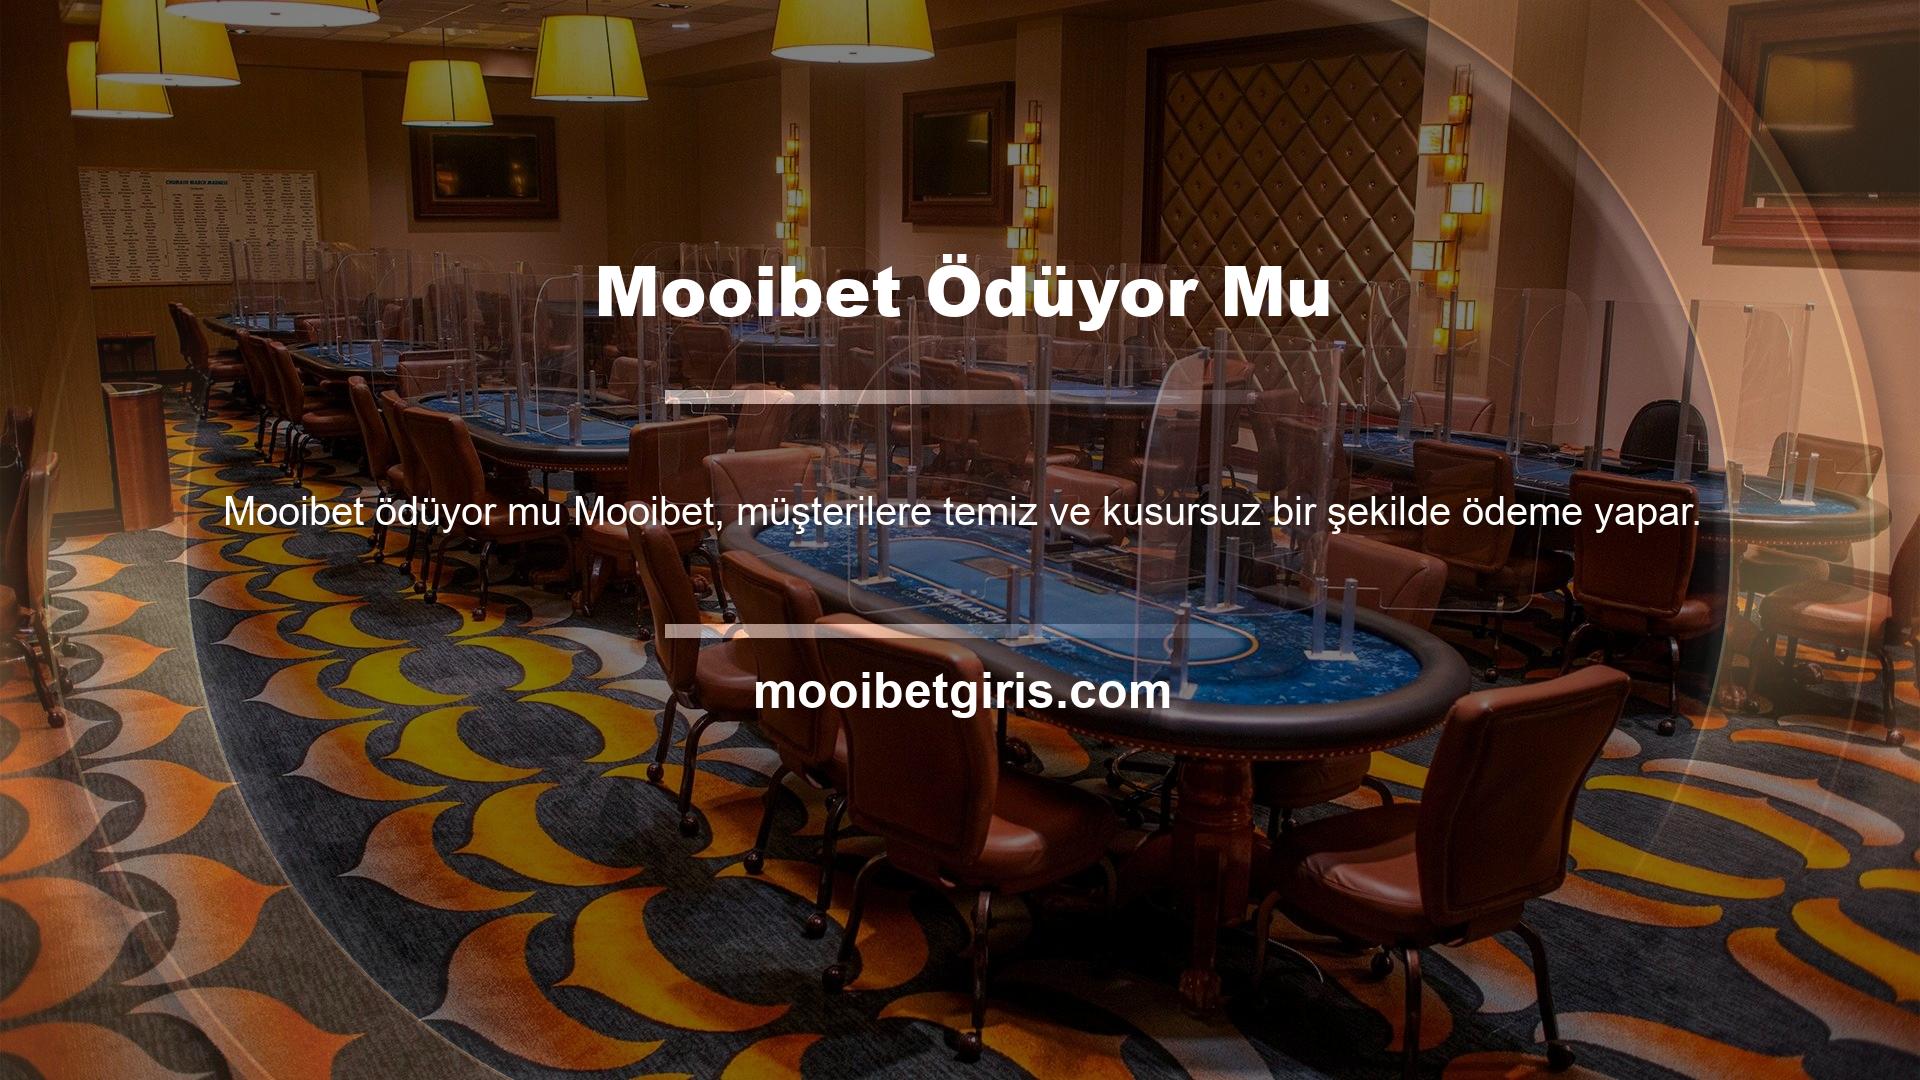 Mooibet Ödüyor Mu Bu nedenle Mooibet web sitesini kullanırken herhangi bir sorunla karşılaşmazsınız